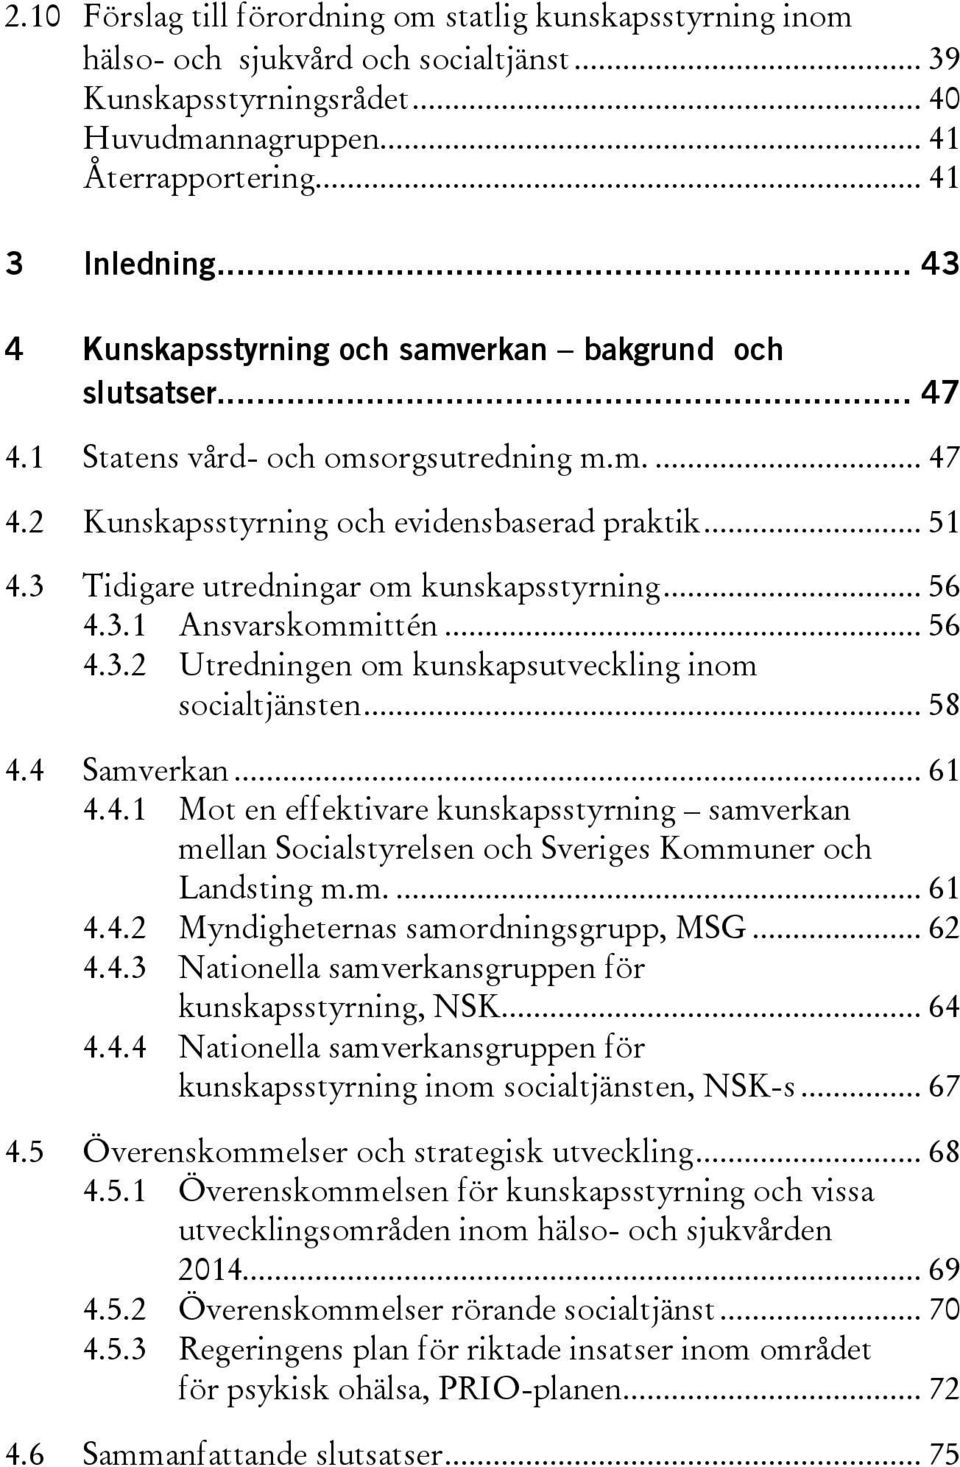 3 Tidigare utredningar om kunskapsstyrning... 56 4.3.1 Ansvarskommittén... 56 4.3.2 Utredningen om kunskapsutveckling inom socialtjänsten... 58 4.4 Samverkan... 61 4.4.1 Mot en effektivare kunskapsstyrning samverkan mellan Socialstyrelsen och Sveriges Kommuner och Landsting m.